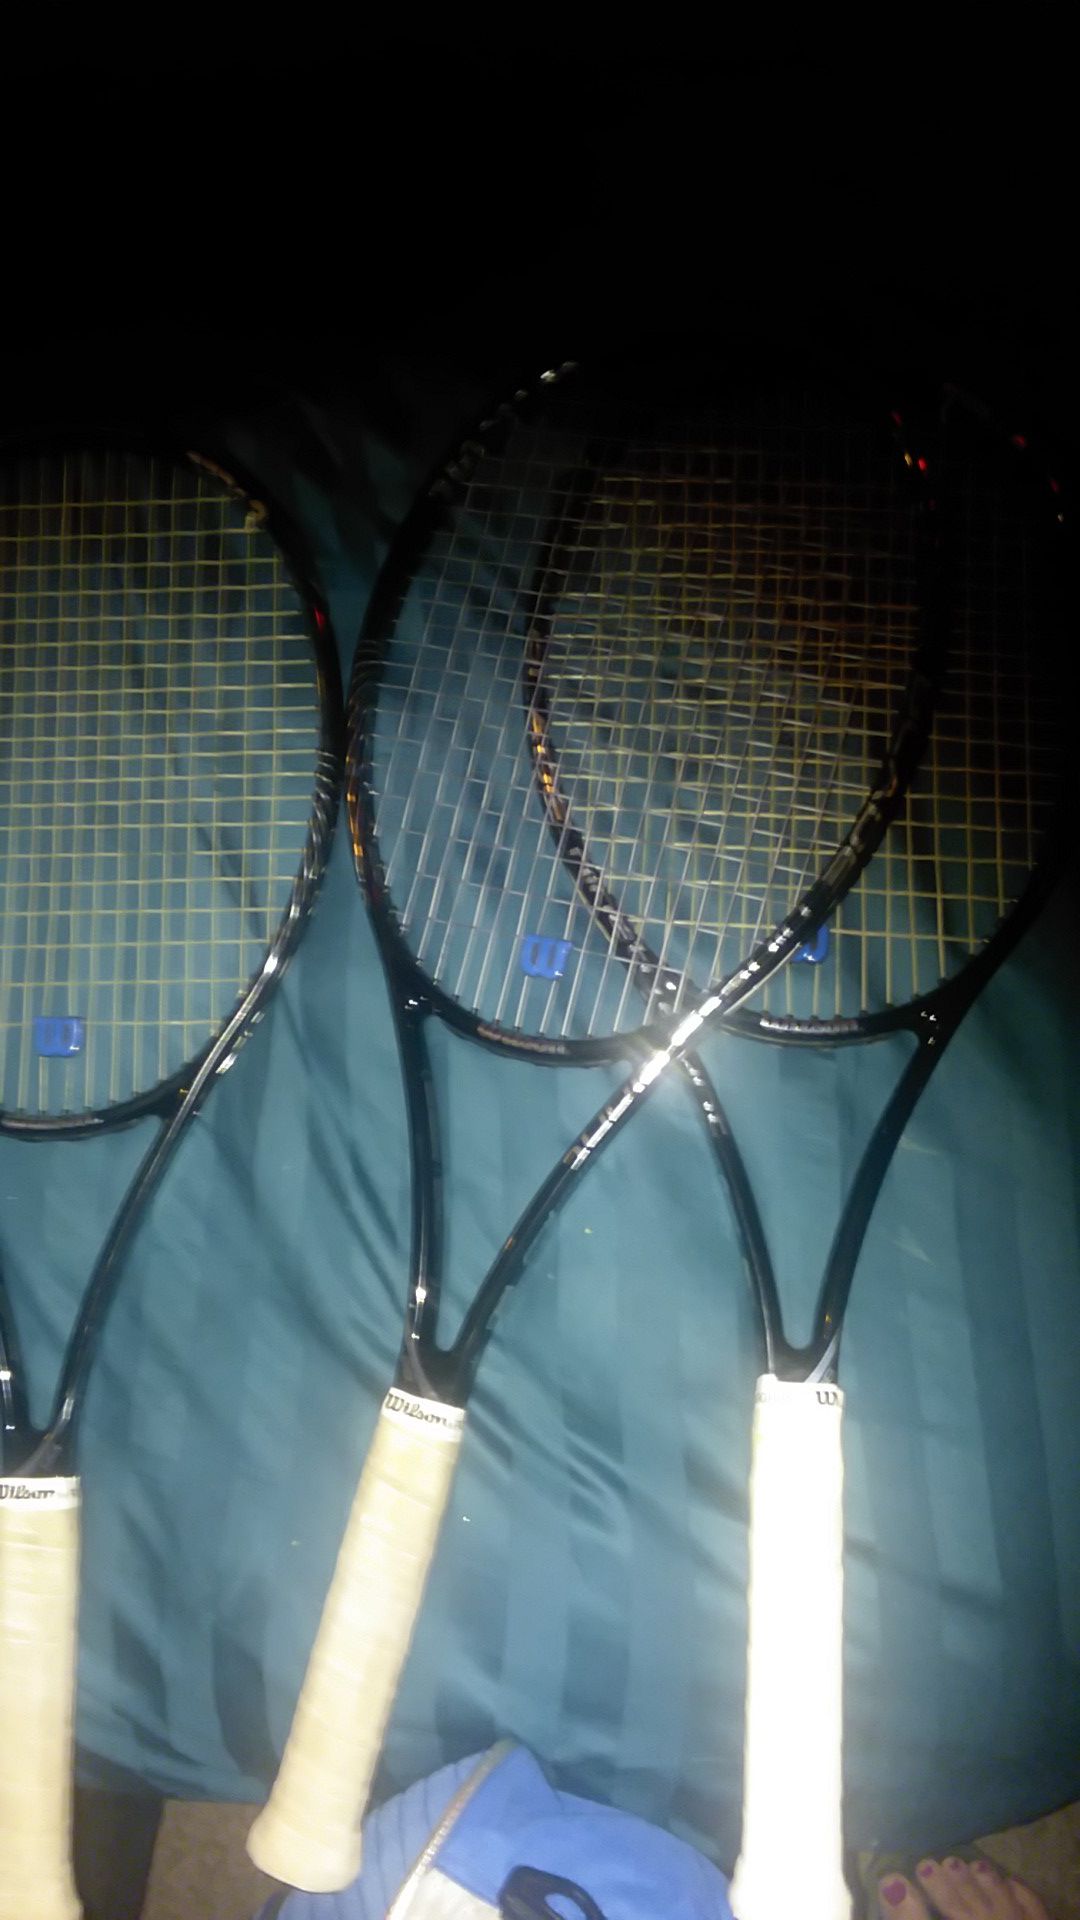 Wilson tennis rackets